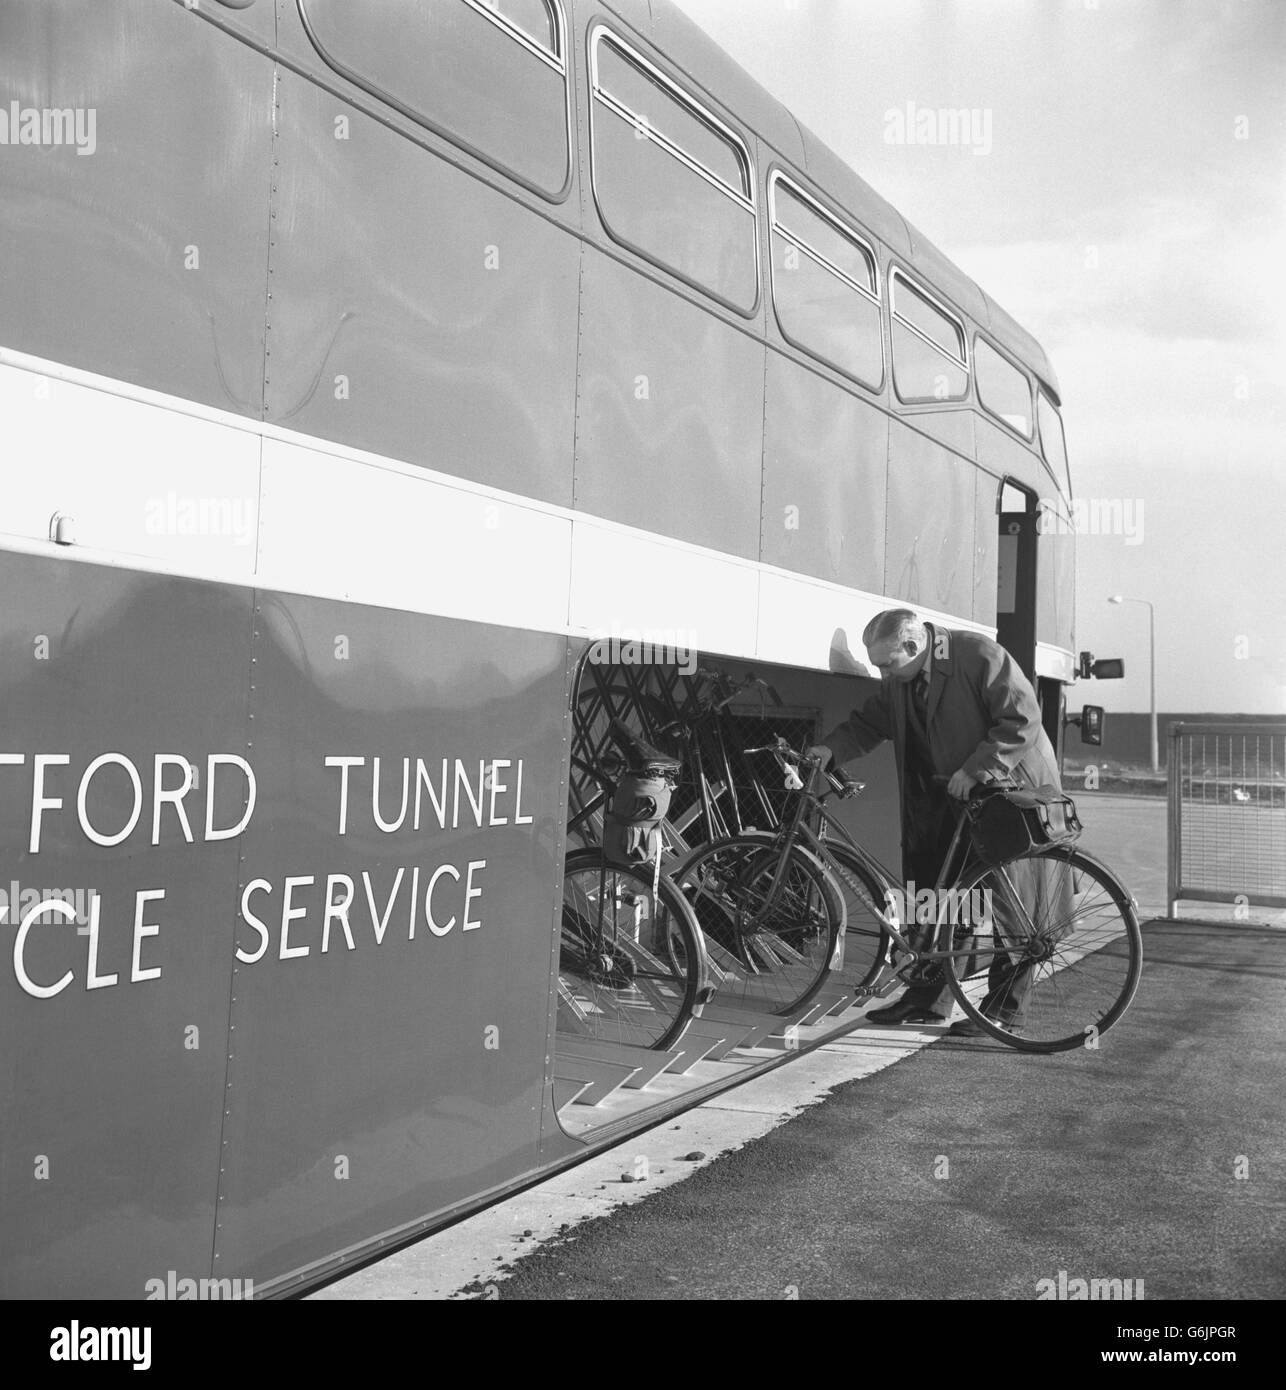 Un bus est prévu pour que les cyclistes passent par le tunnel de Dartford et se reporte dans une baie de chargement spéciale, d'où les bicyclettes peuvent être poussées sur les casiers fournis. Les cyclistes à pédales sont interdits dans le nouveau tunnel de Dartford et devront utiliser un bus spécial utilisé dans le nouveau tunnel de la Tamise entre Dartford, Kent, et Thurrock, Essex. Le trajet coûte 6d. Banque D'Images